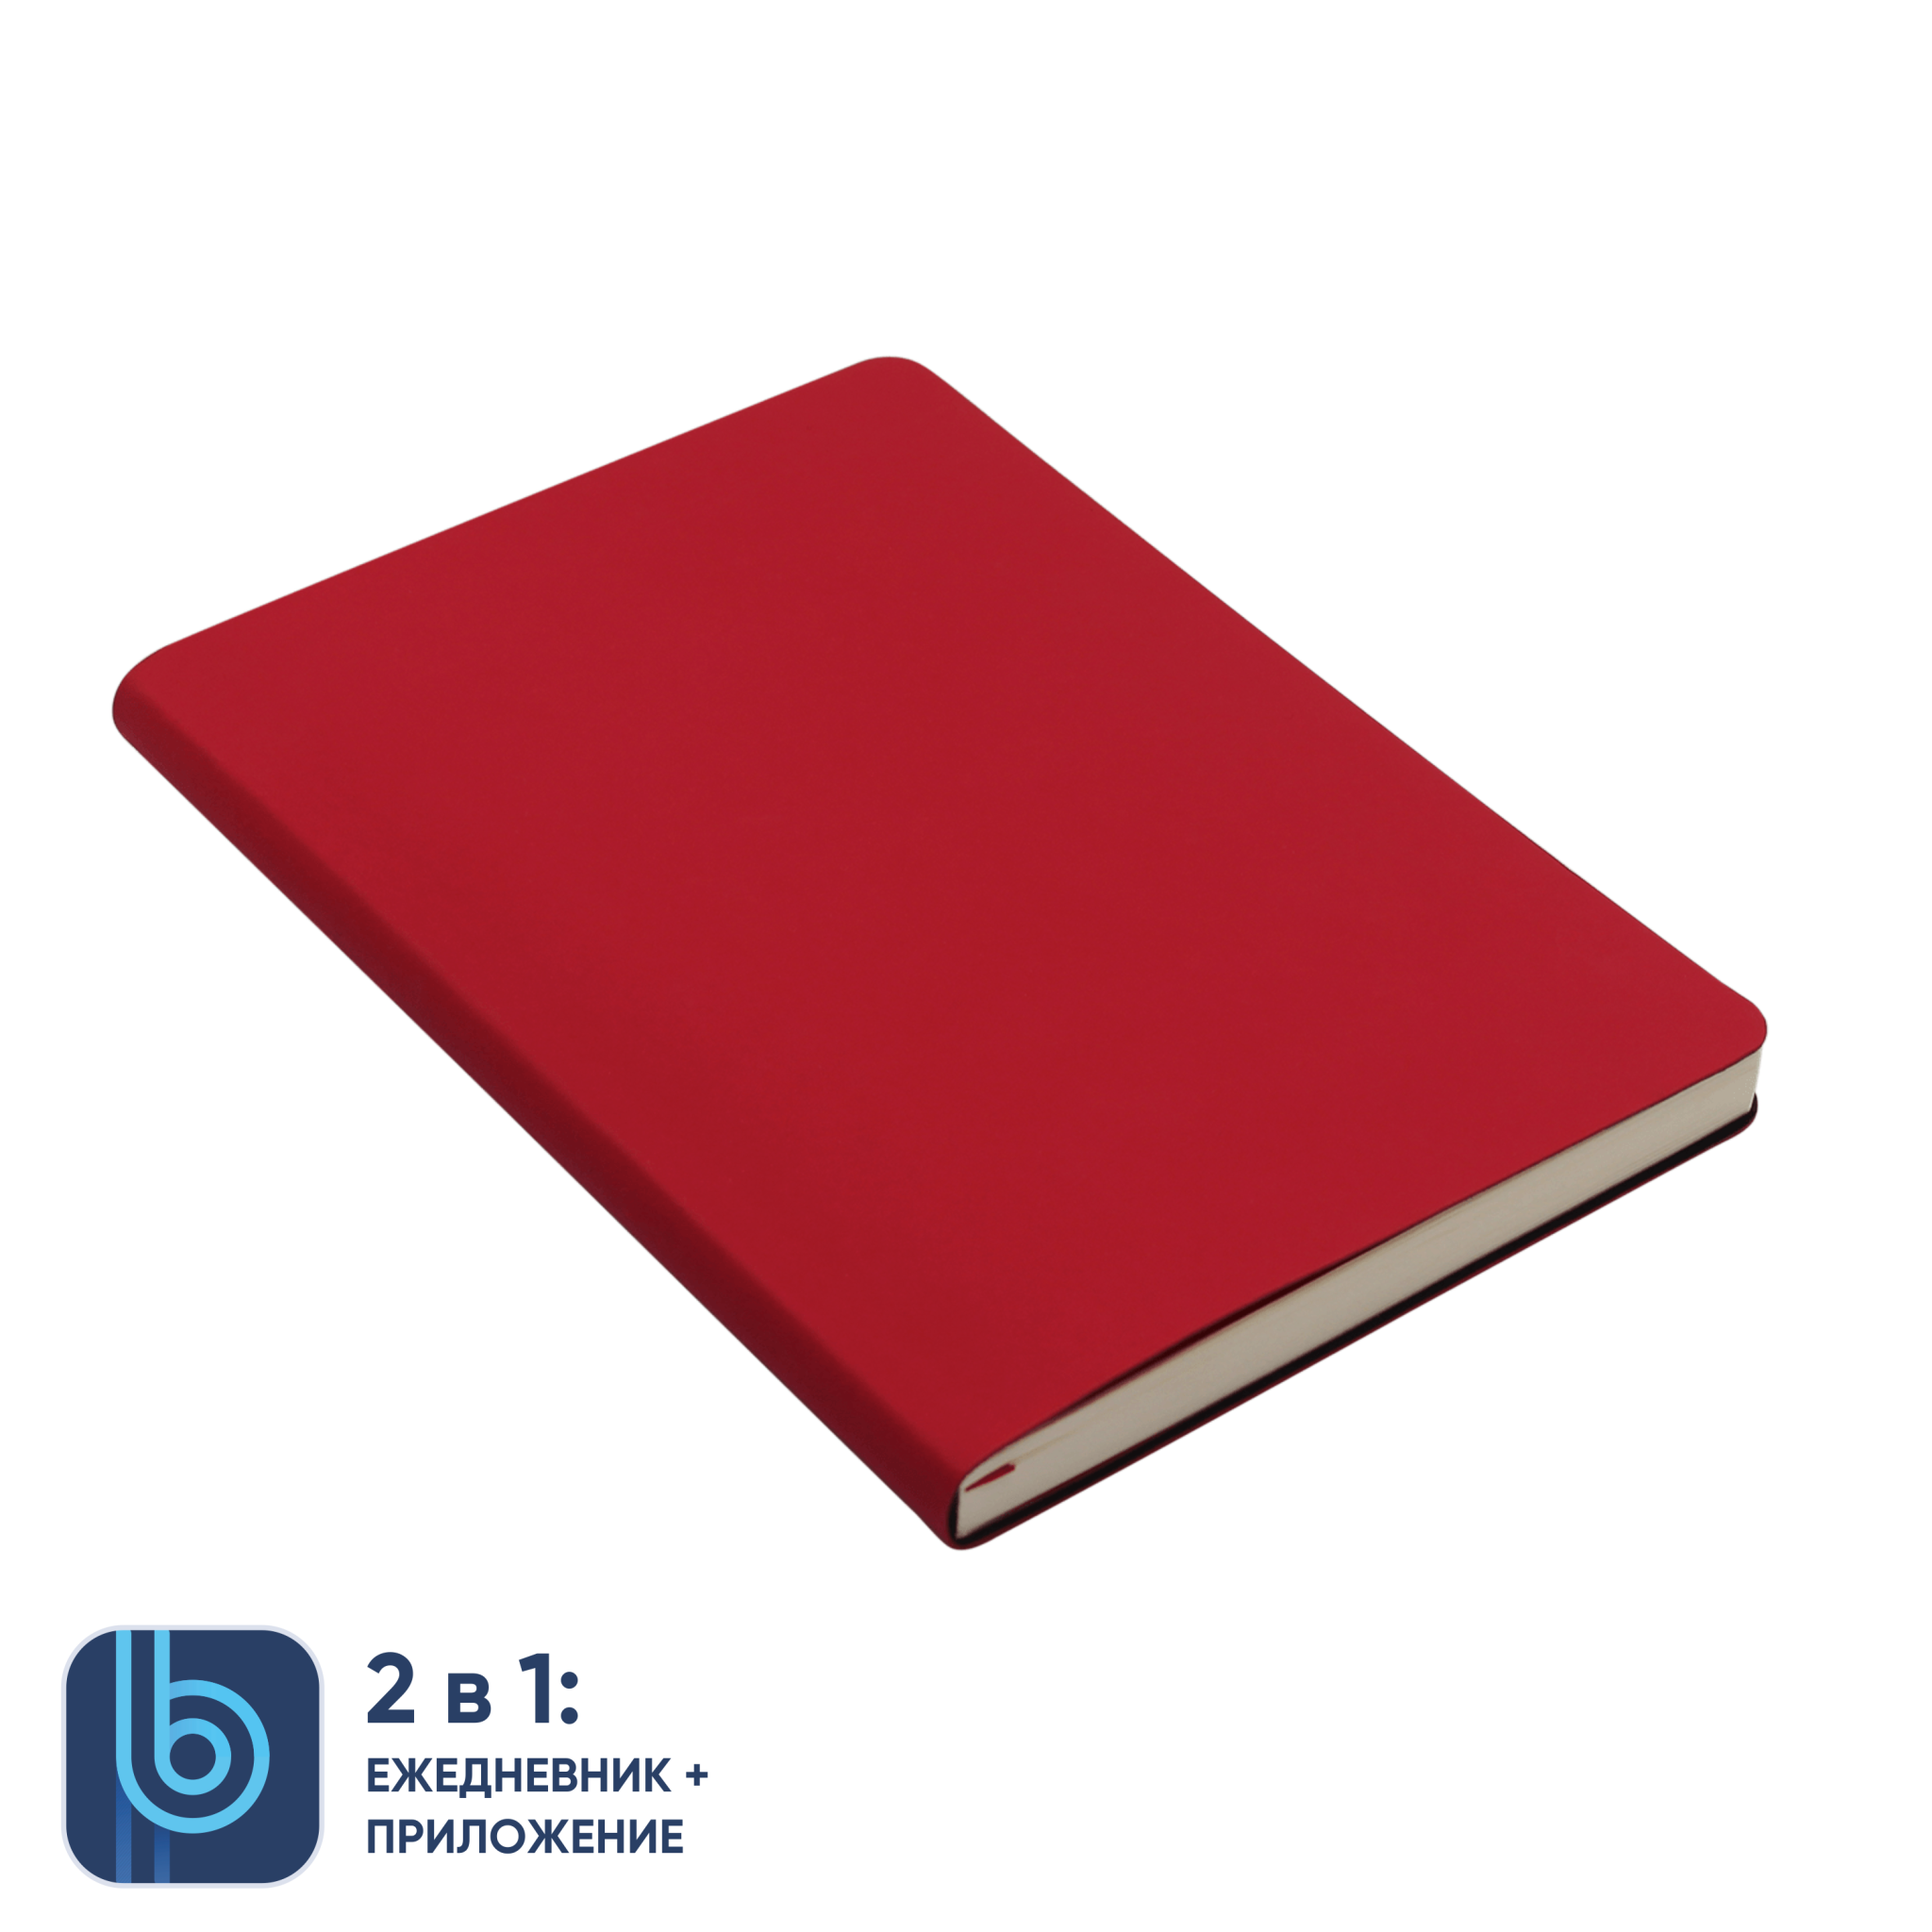 Ежедневник Bplanner.01 red (красный), красный, картон